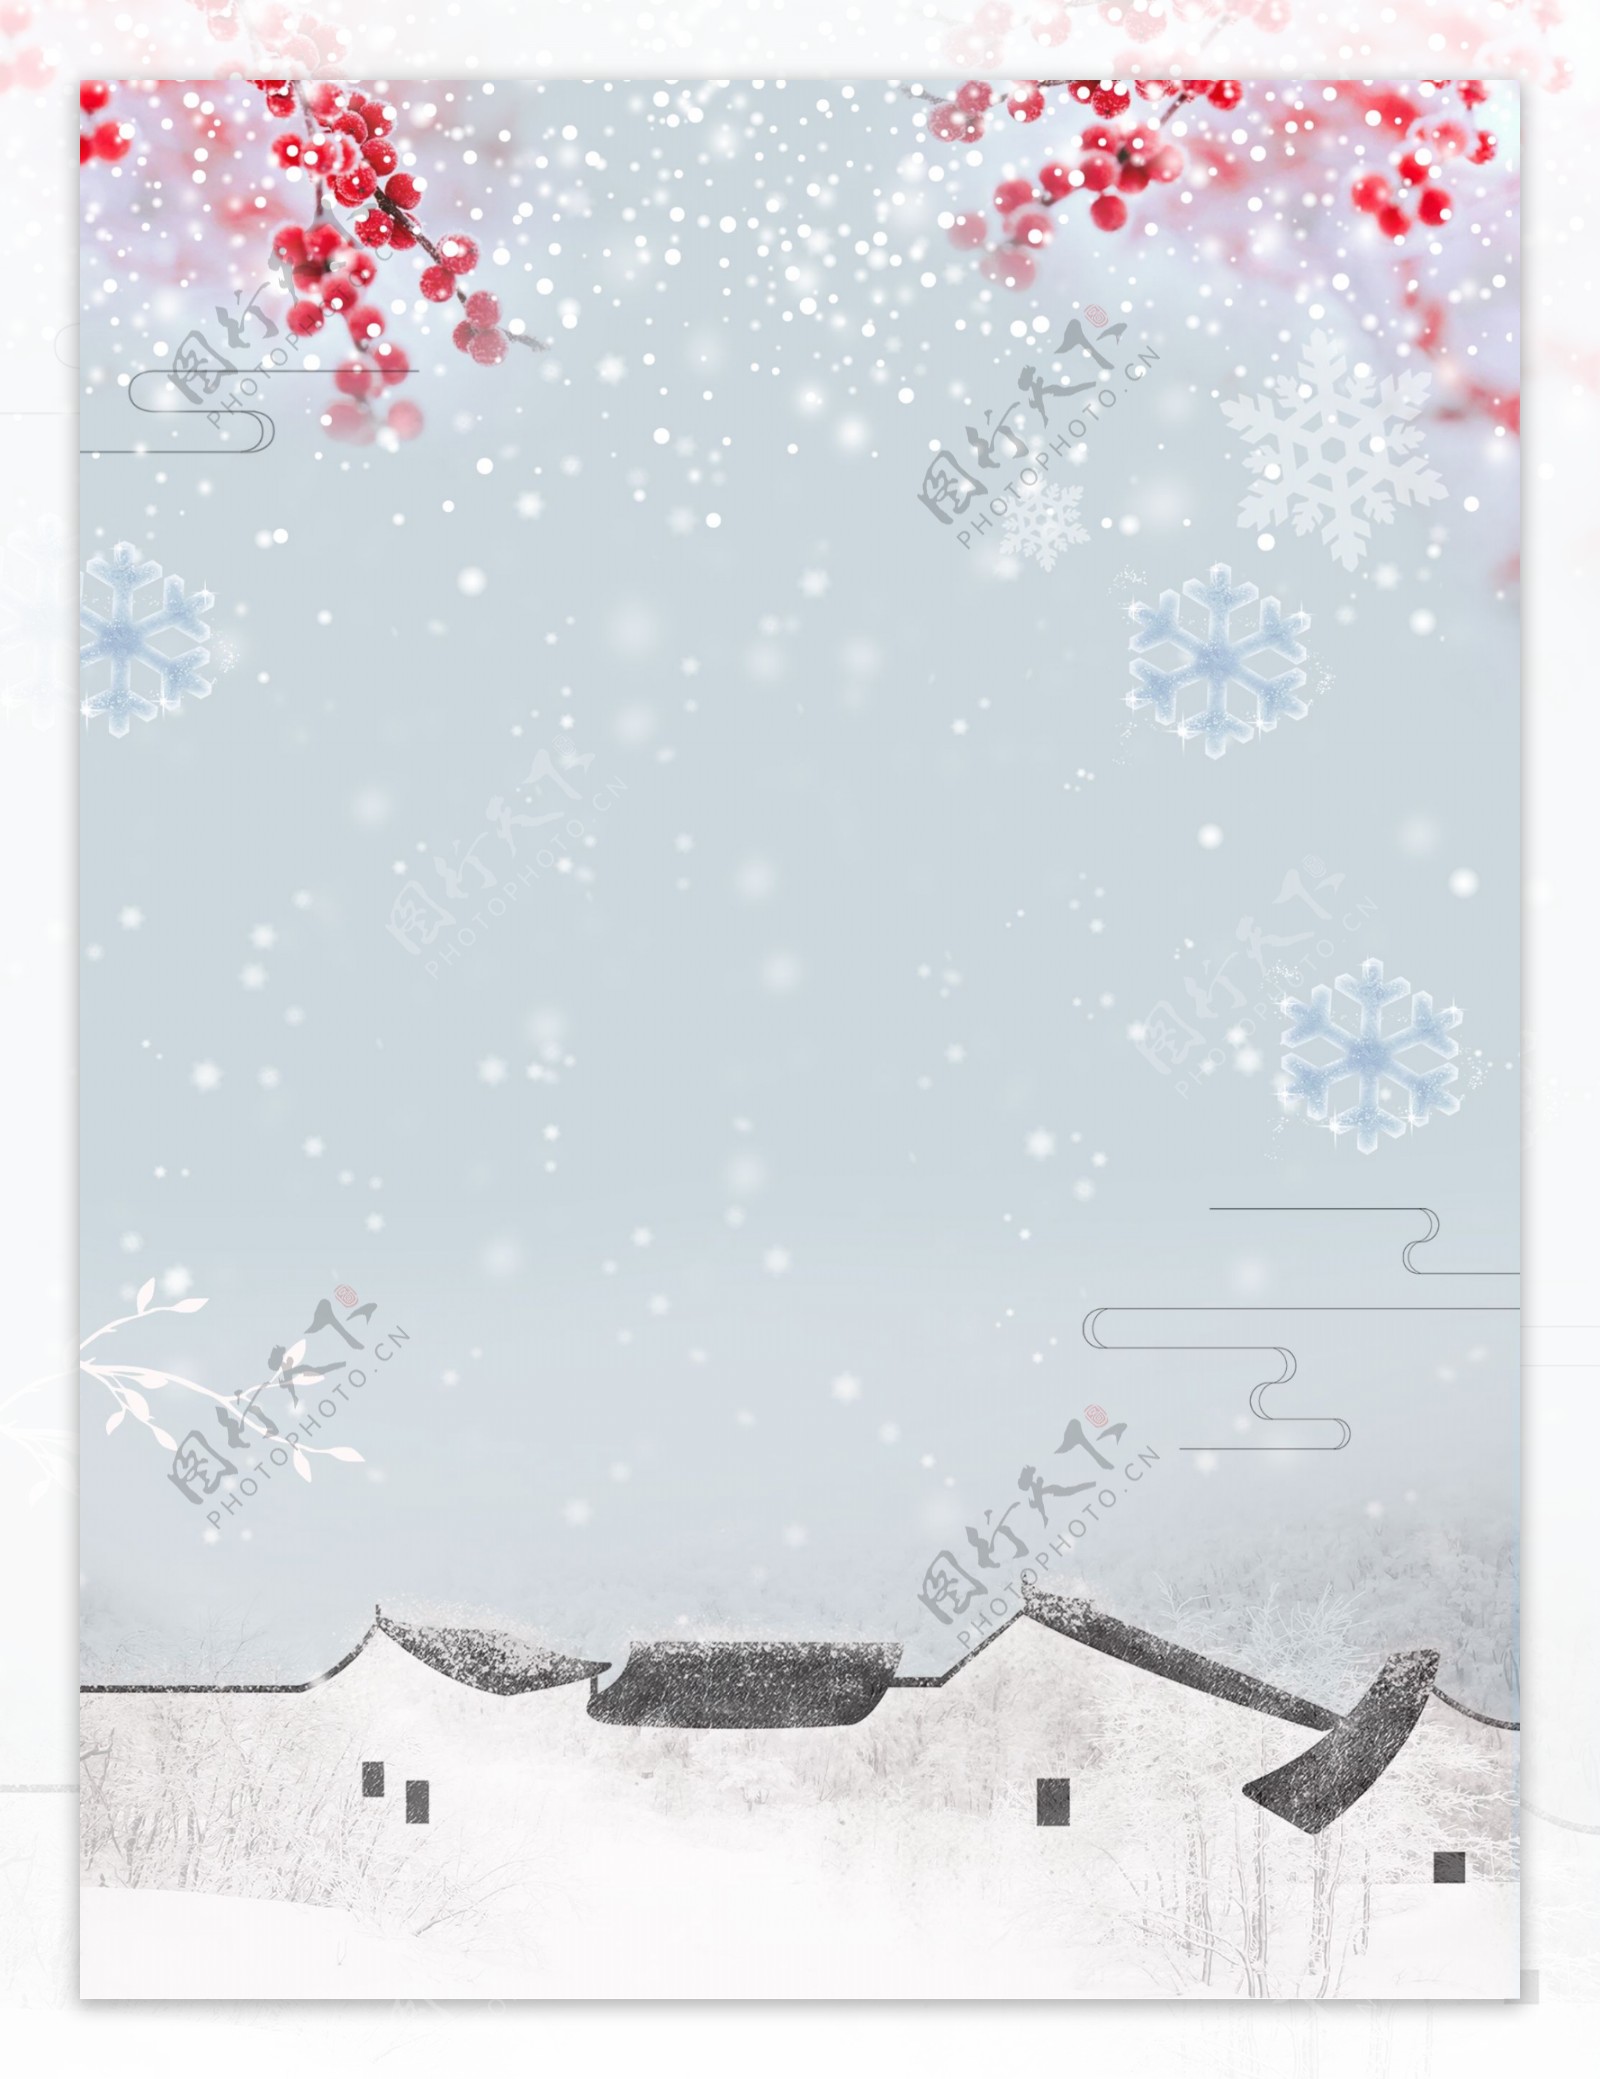 彩绘传统大雪节气背景设计